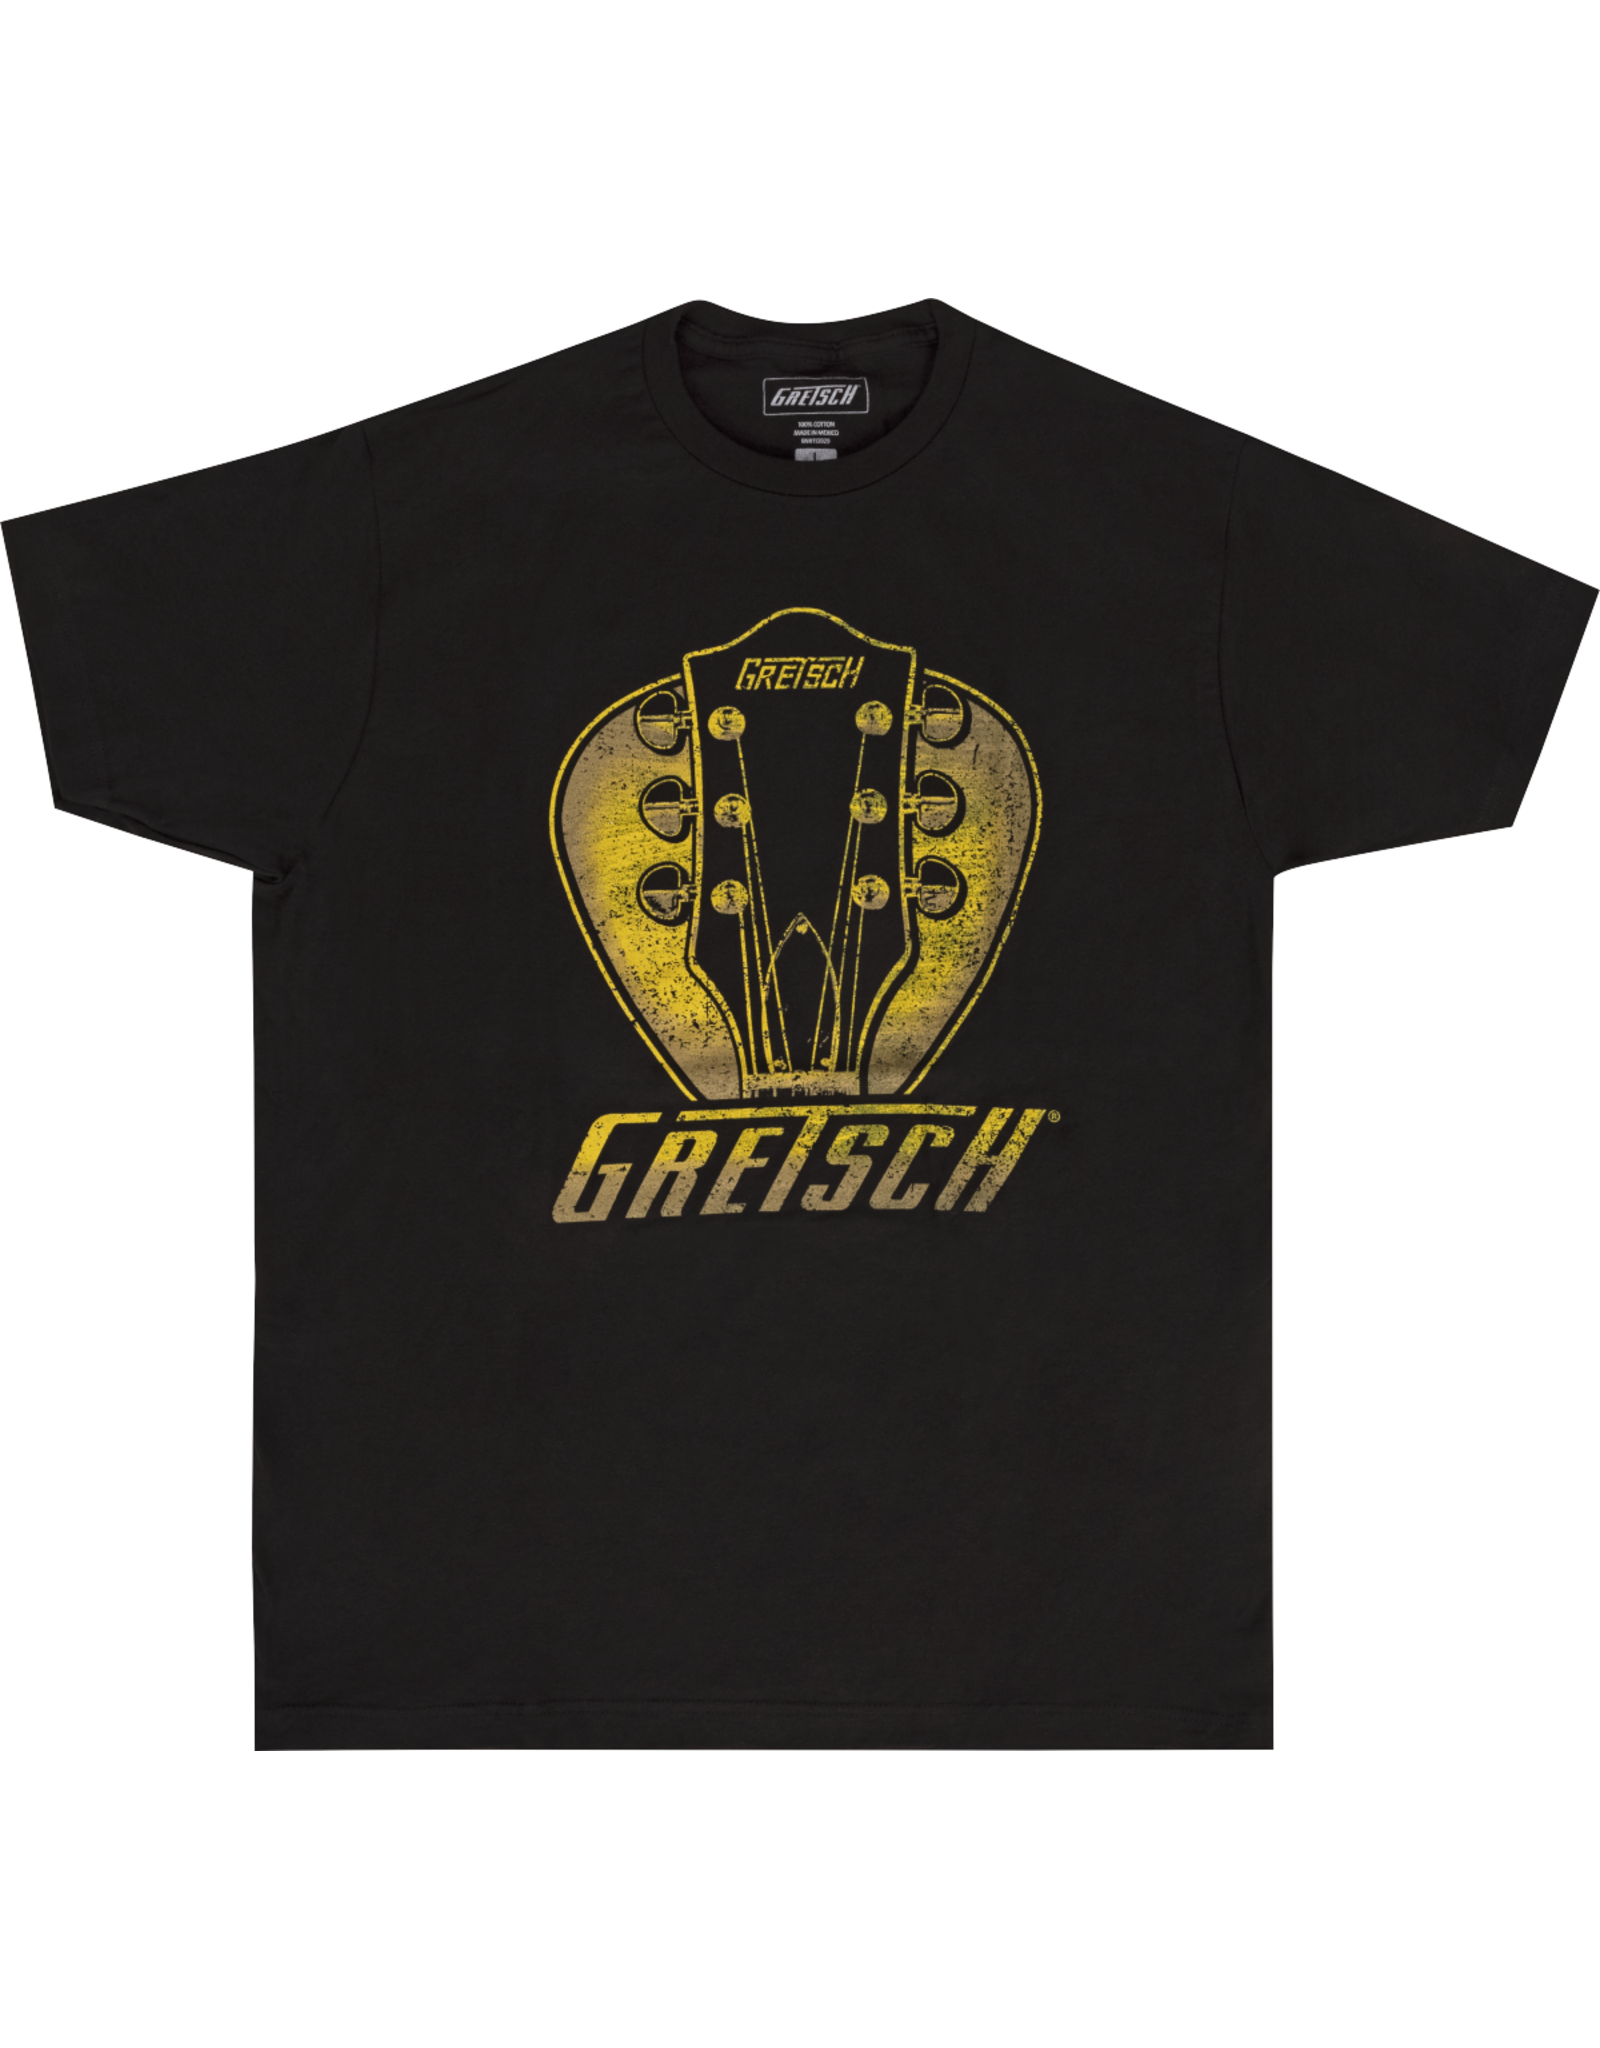 Gretsch Gretsch Headstock Pick T-Shirt, Black, Small